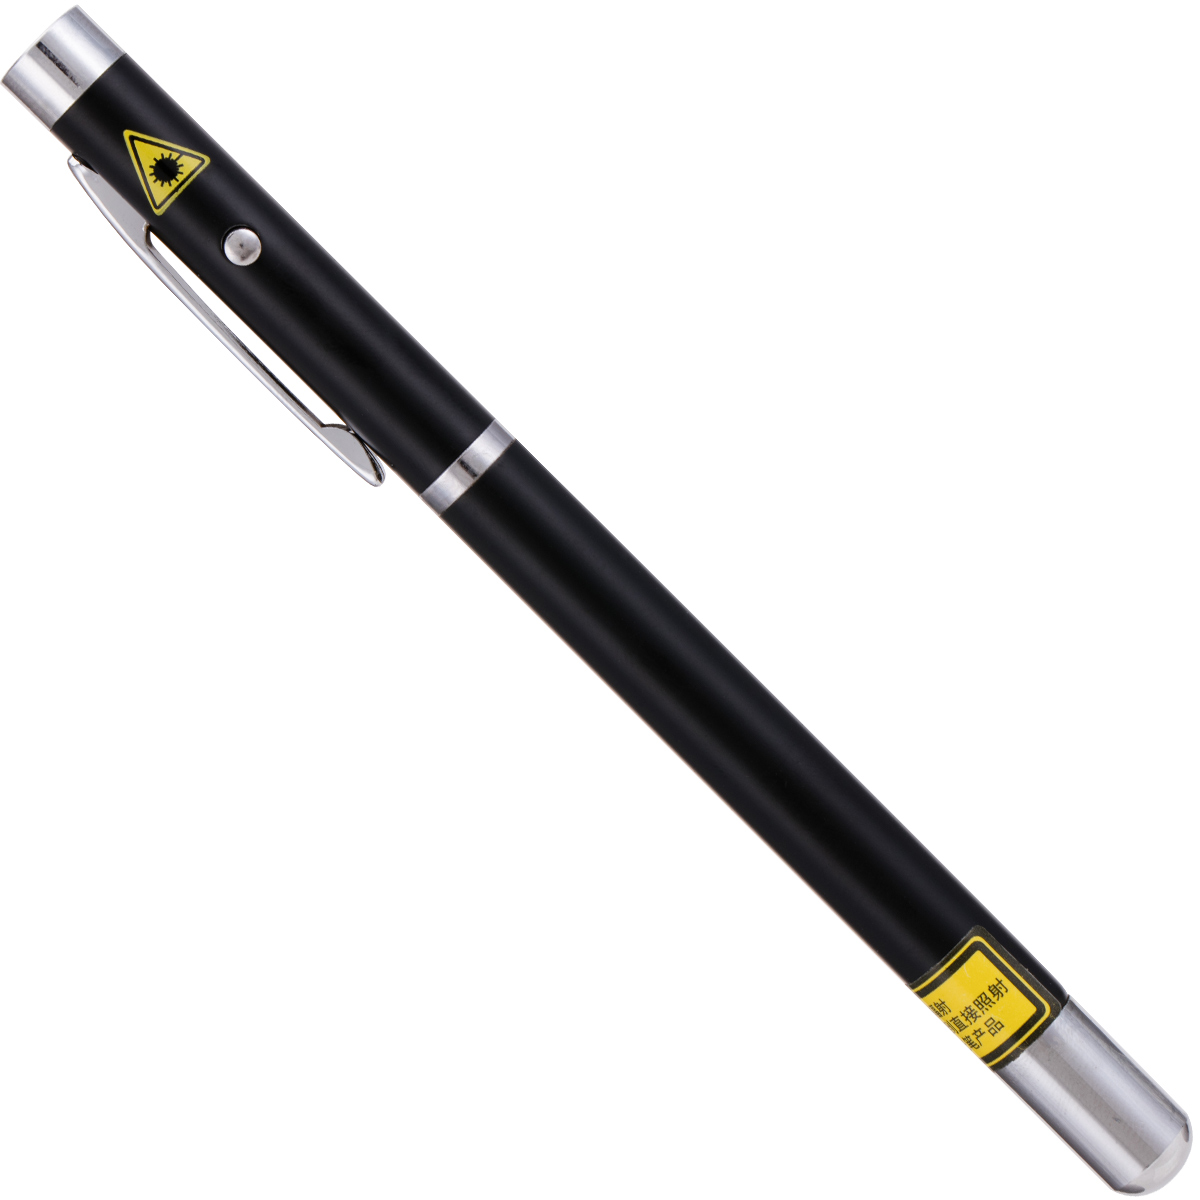 得力(deli) 可伸缩激光教鞭 便携式激光笔-无线演示器 3934 黑色钢笔造型教鞭